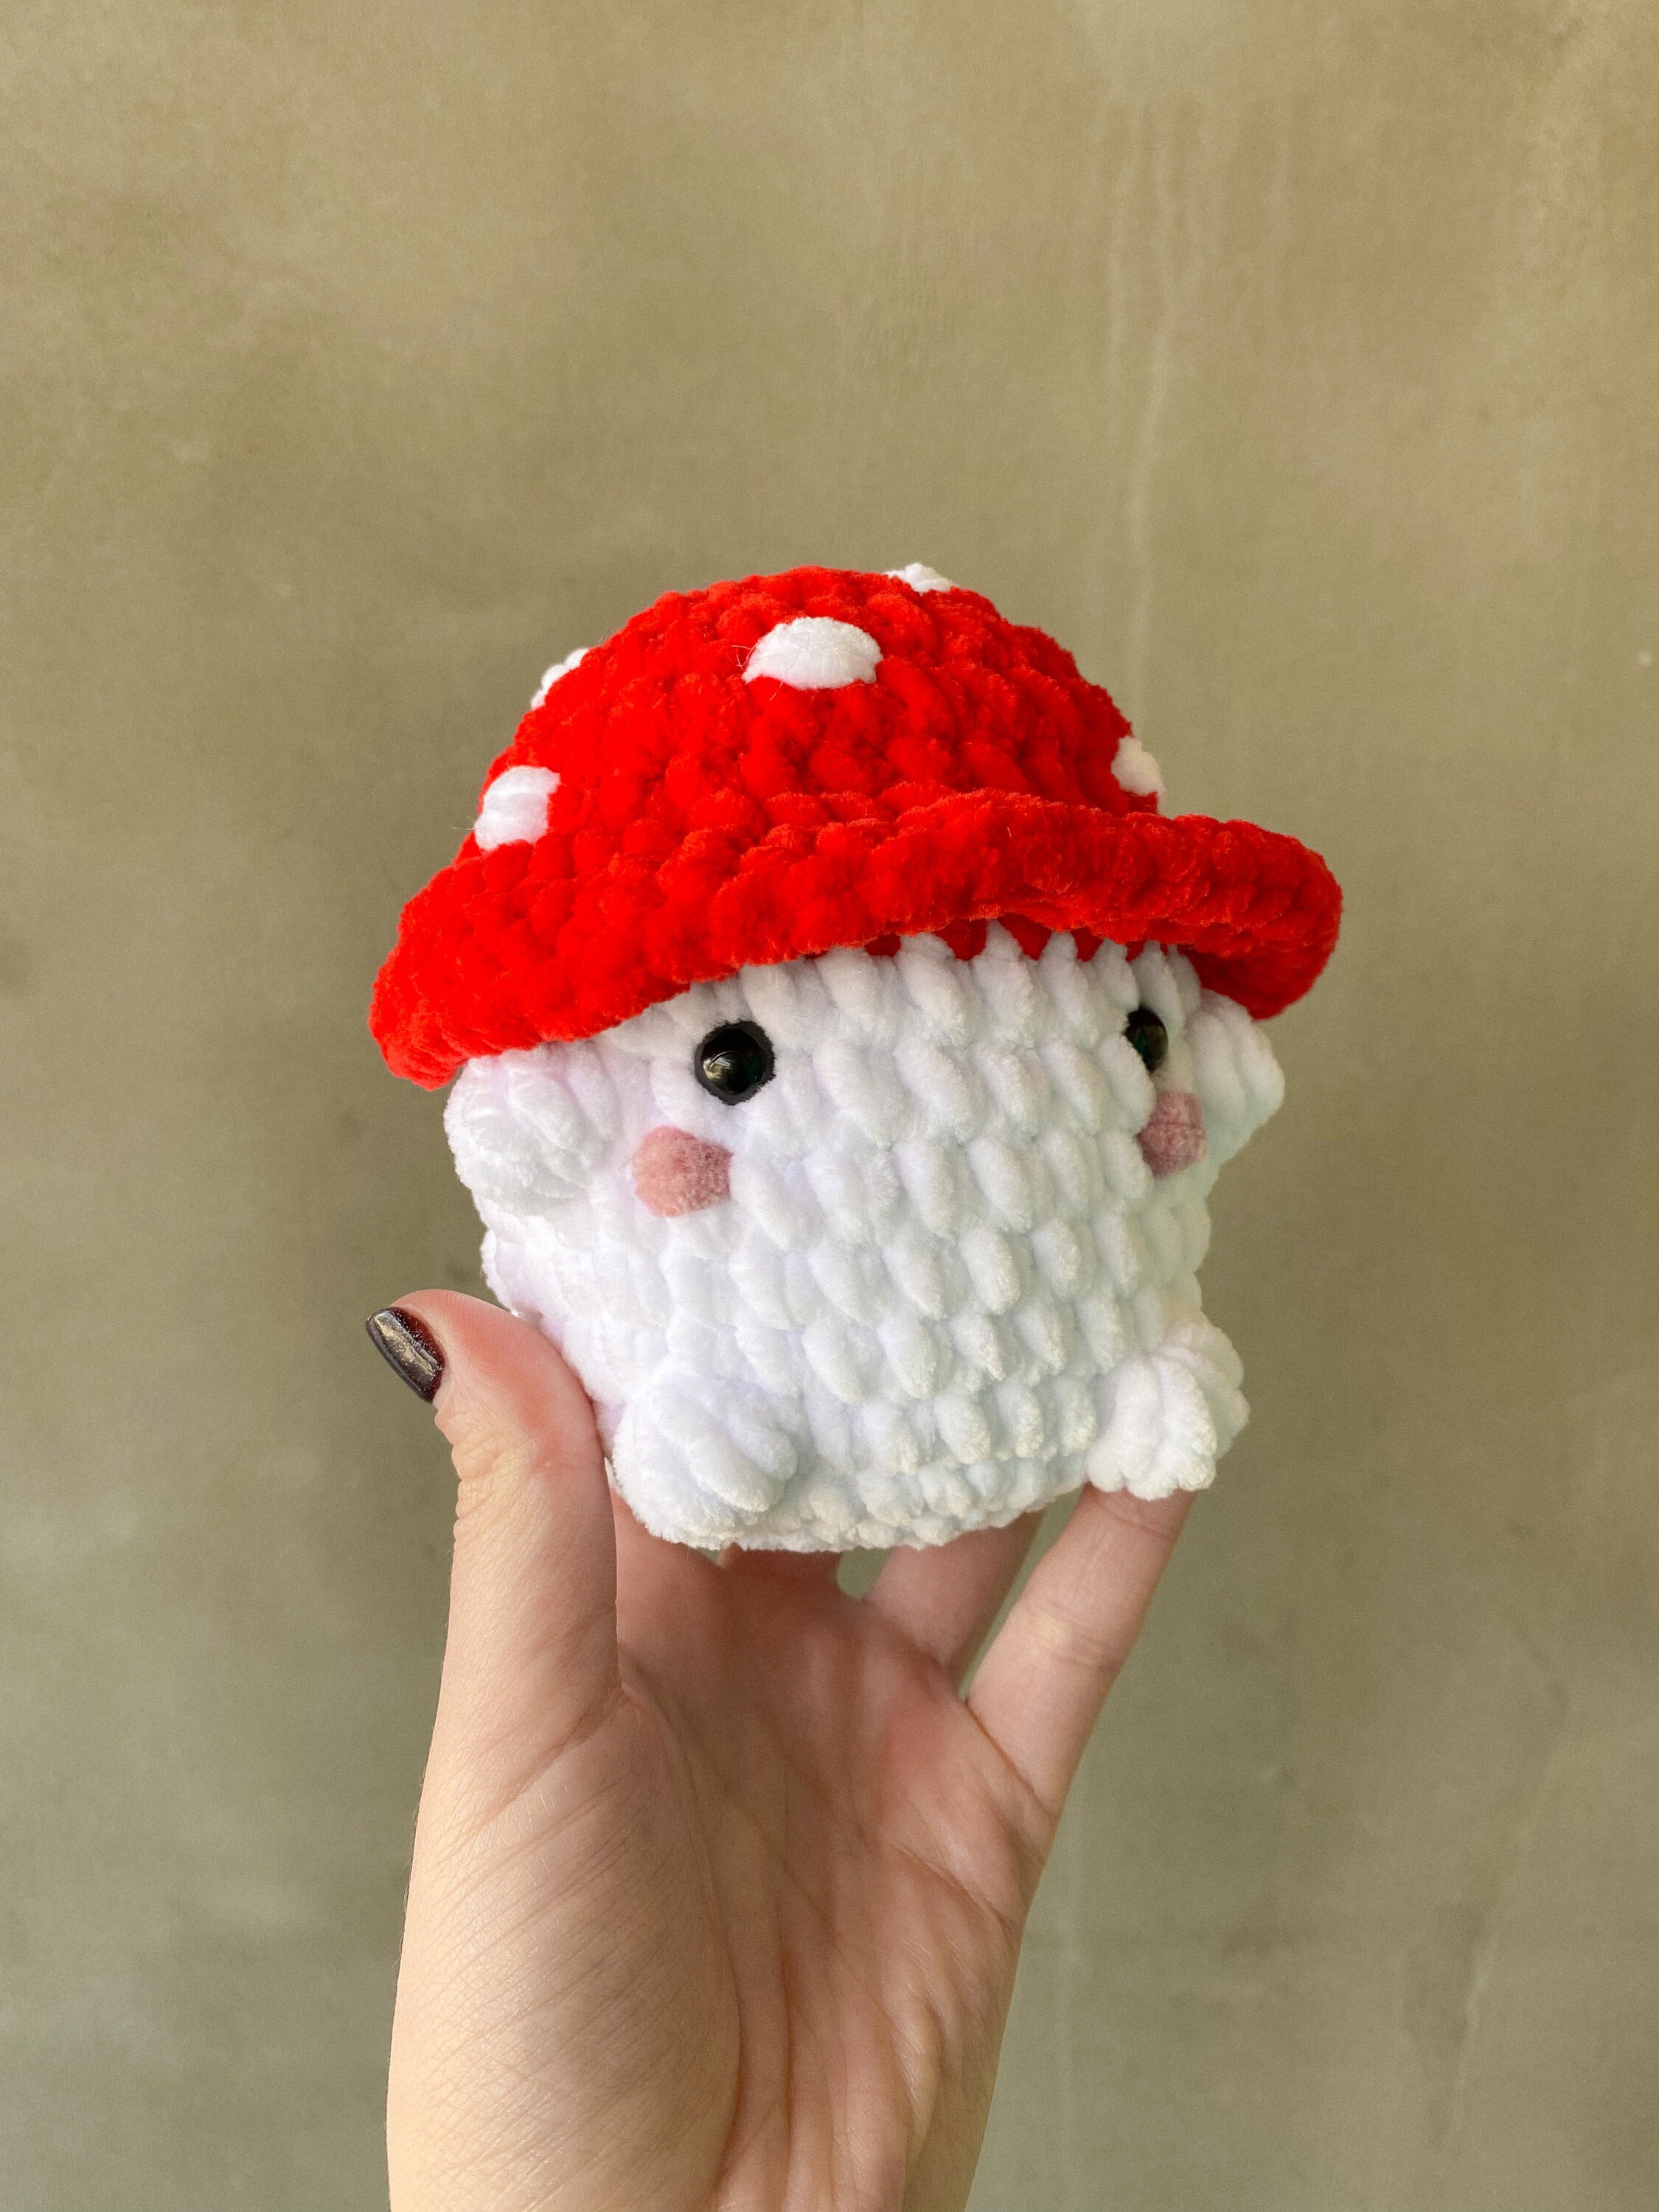 Emotional Support Mushroom - Stuffed Amanita Plushroom